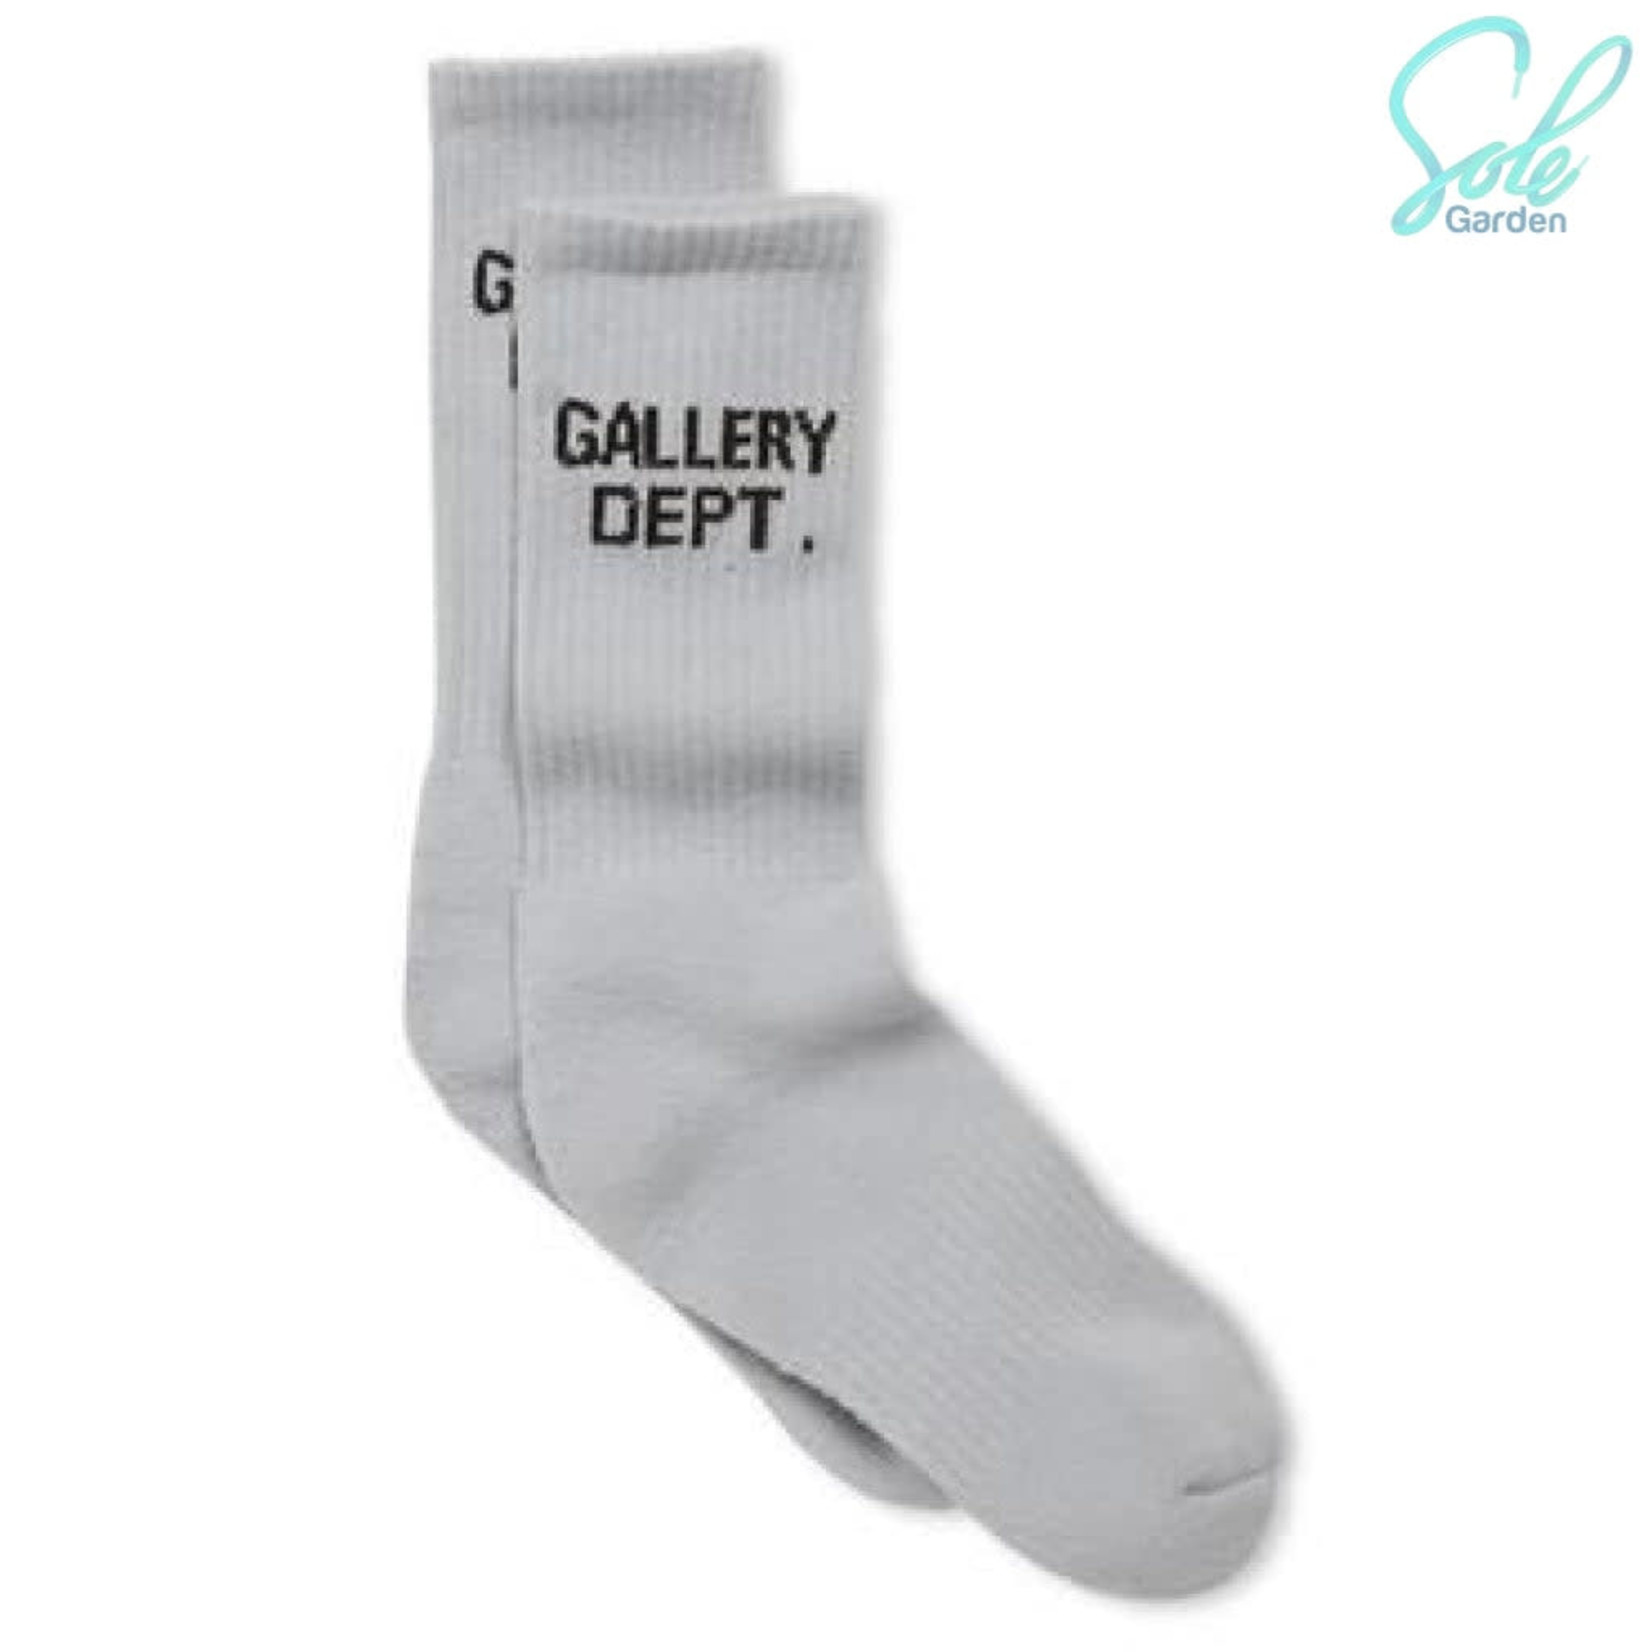 Gallery Dept Clean Socks